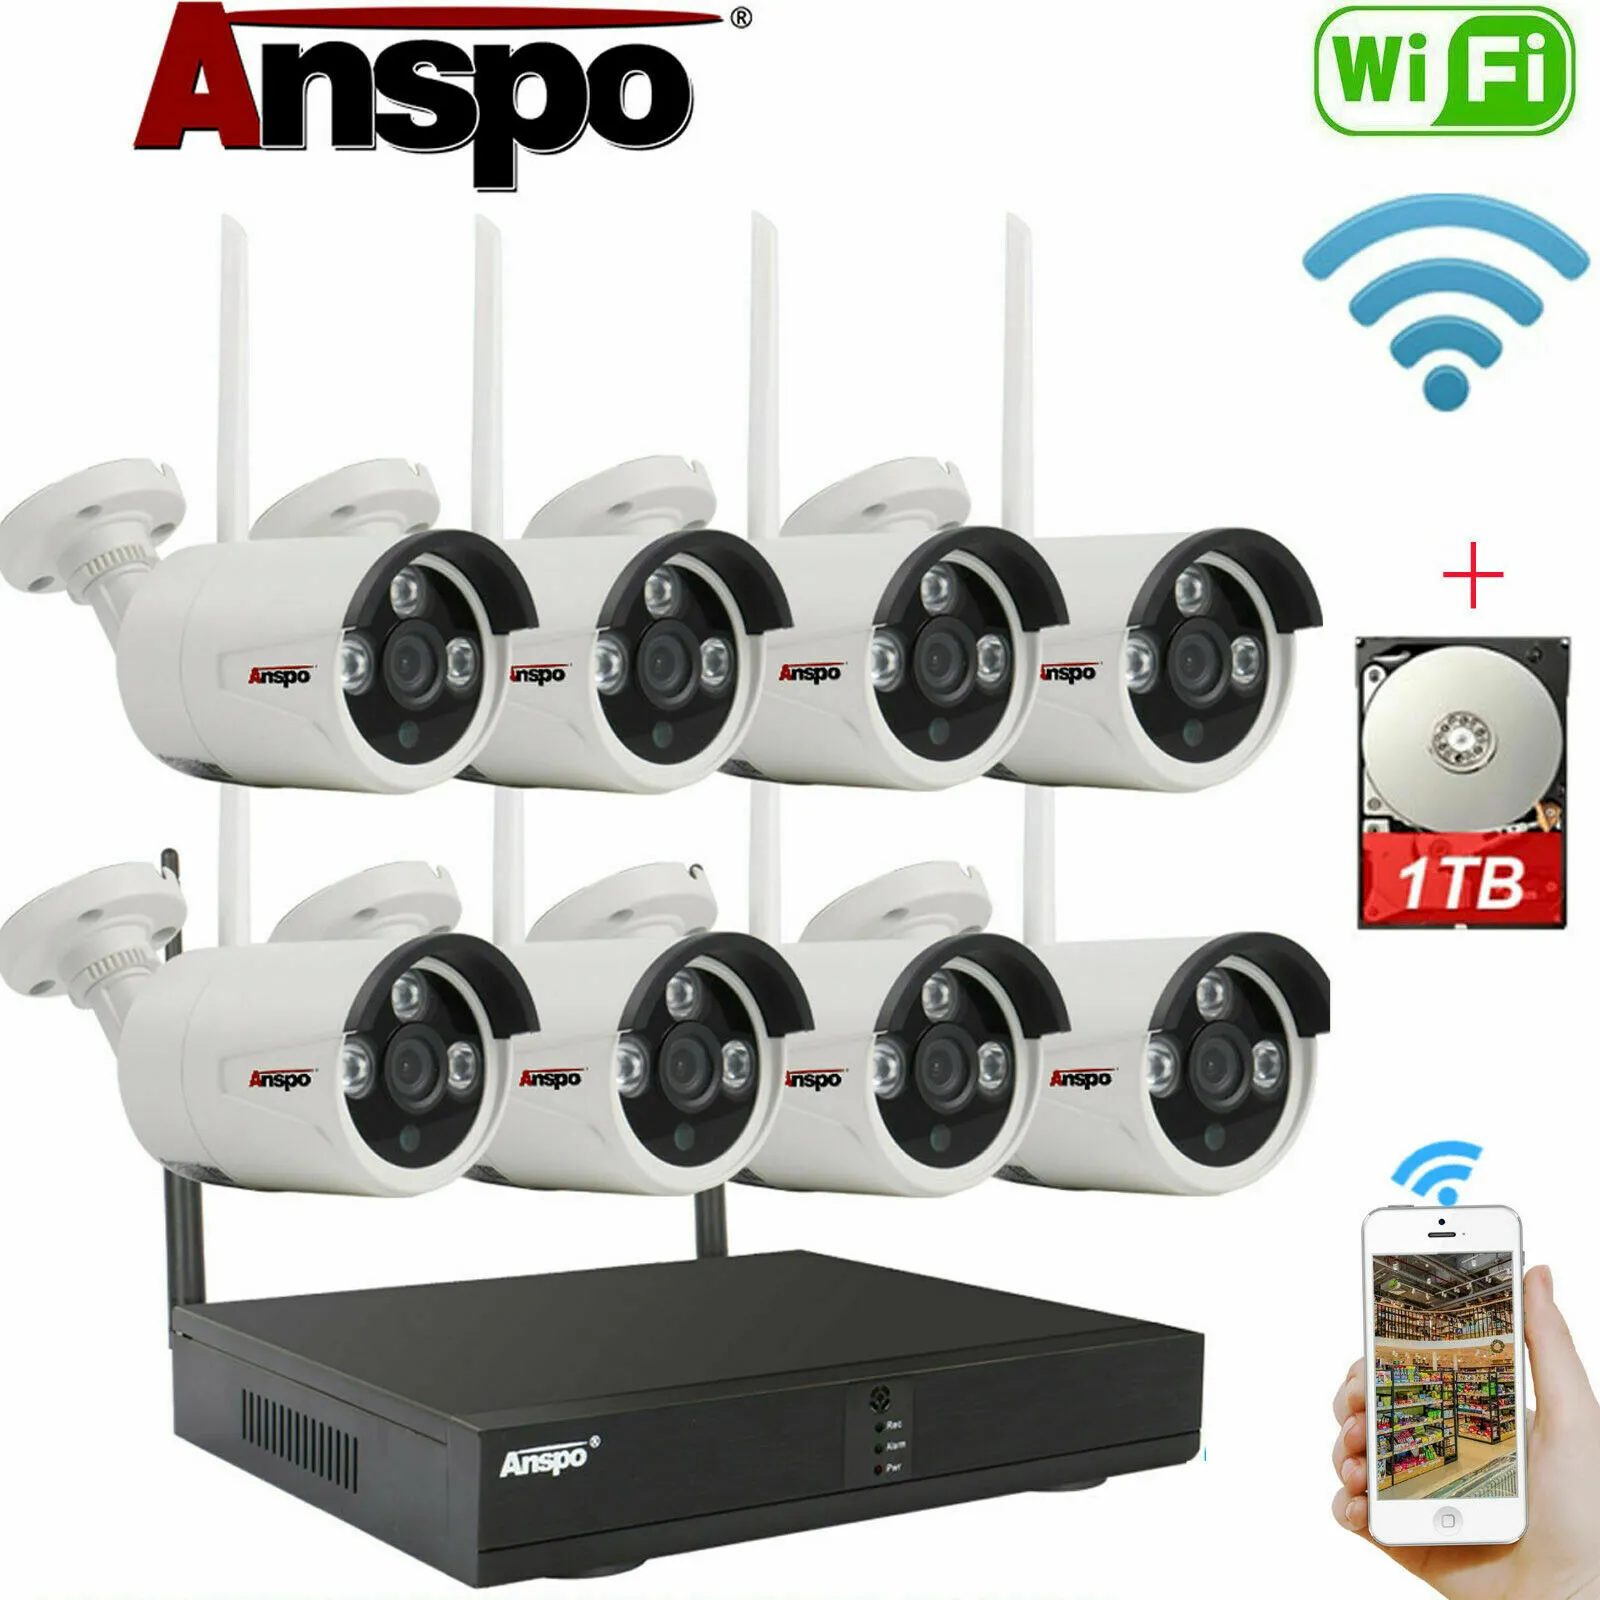 ANSPO 8CH Trådlös säkerhetskamera System WIFI Kamera Kit IR-Cut Night Vision CCTV Home Surveillance NVR med 1TB hårddisk